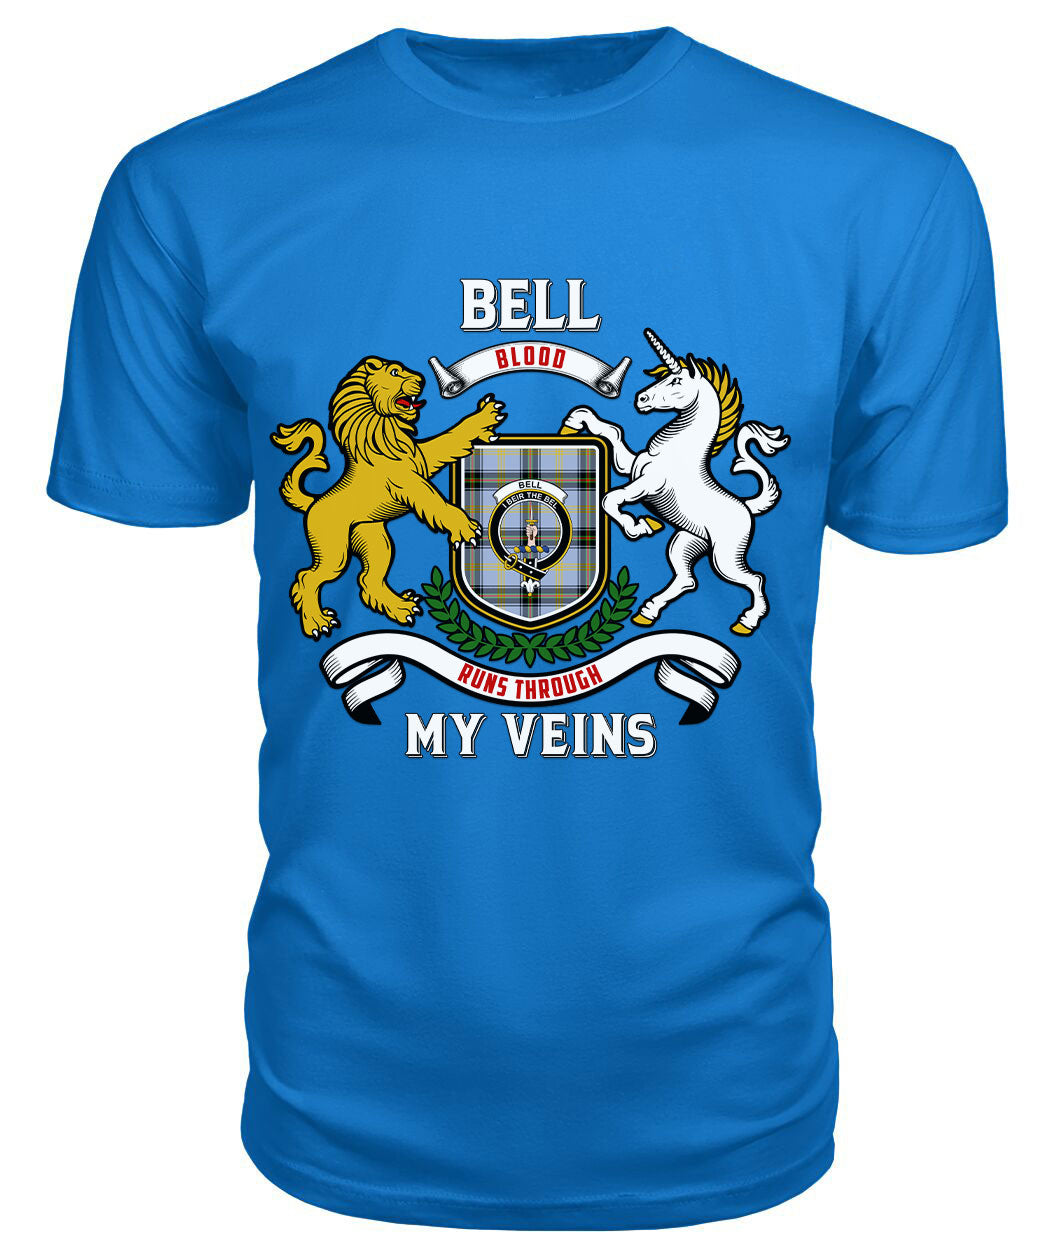 Bell of the Borders Tartan Crest 2D T-shirt - Blood Runs Through My Veins Style